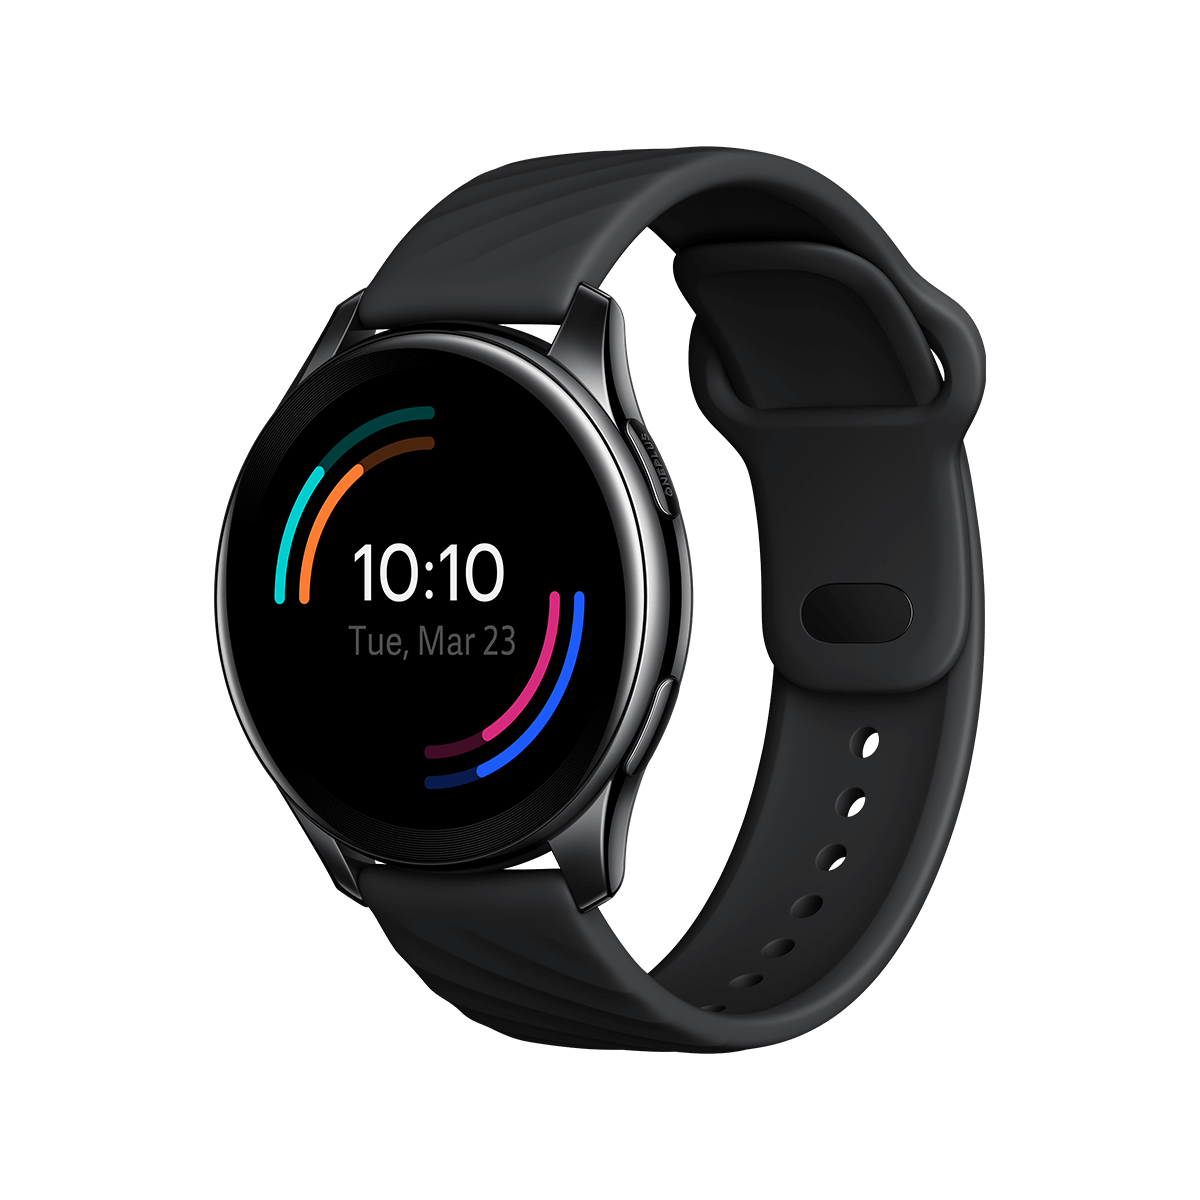 OnePlus Watch - $79.50